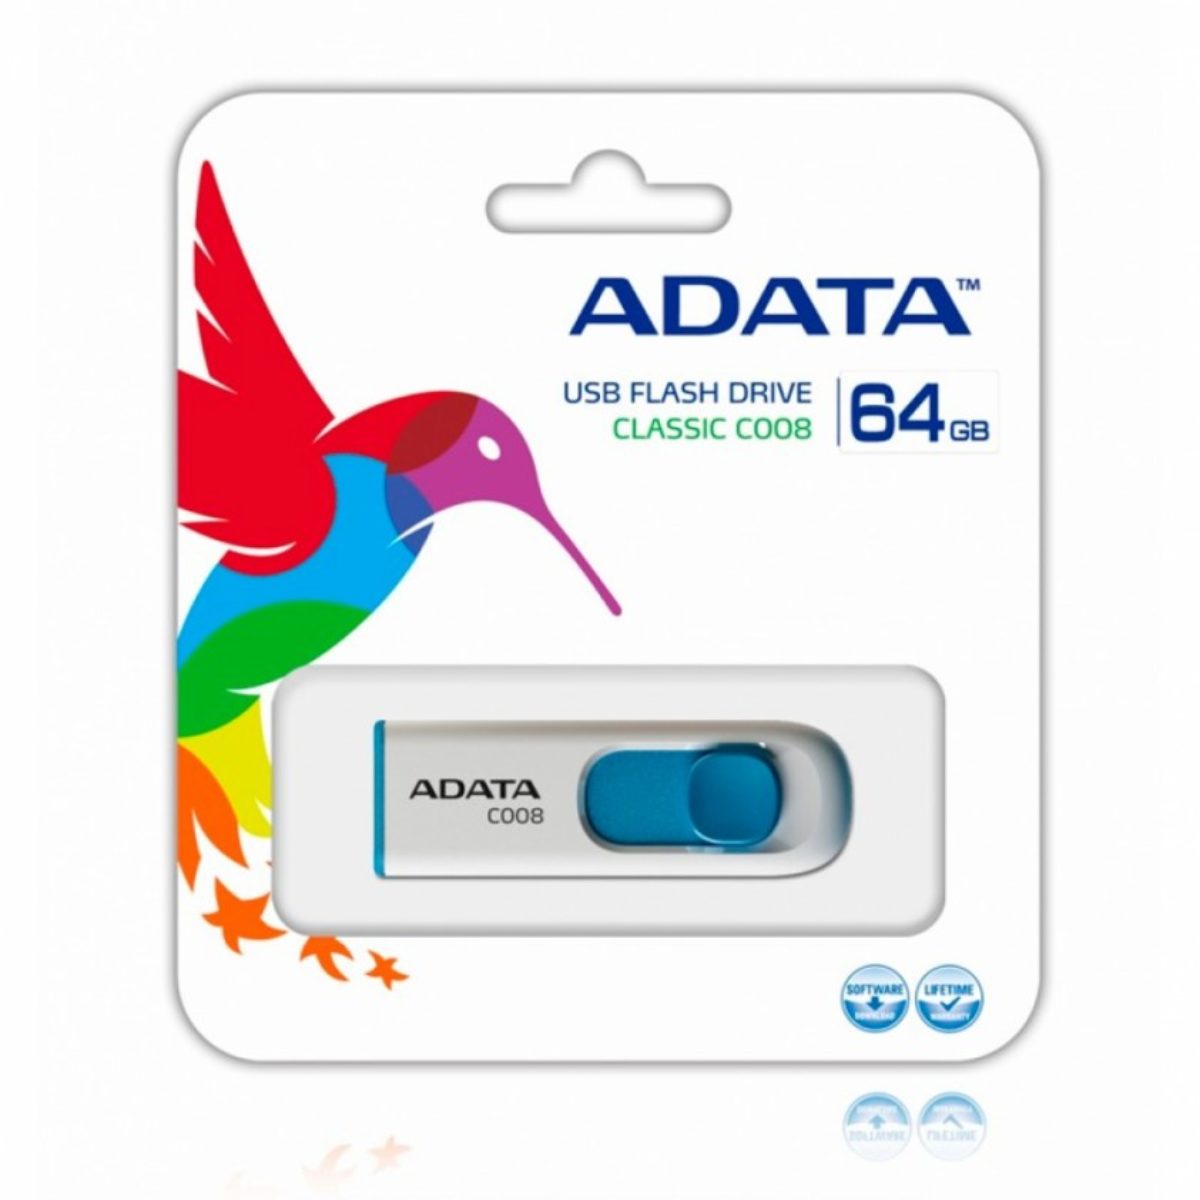 MEMORIA FLASH ADATA C008 64GB USB 2.0 BLANCO/AZUL RETRACTIL - C008W-64GB